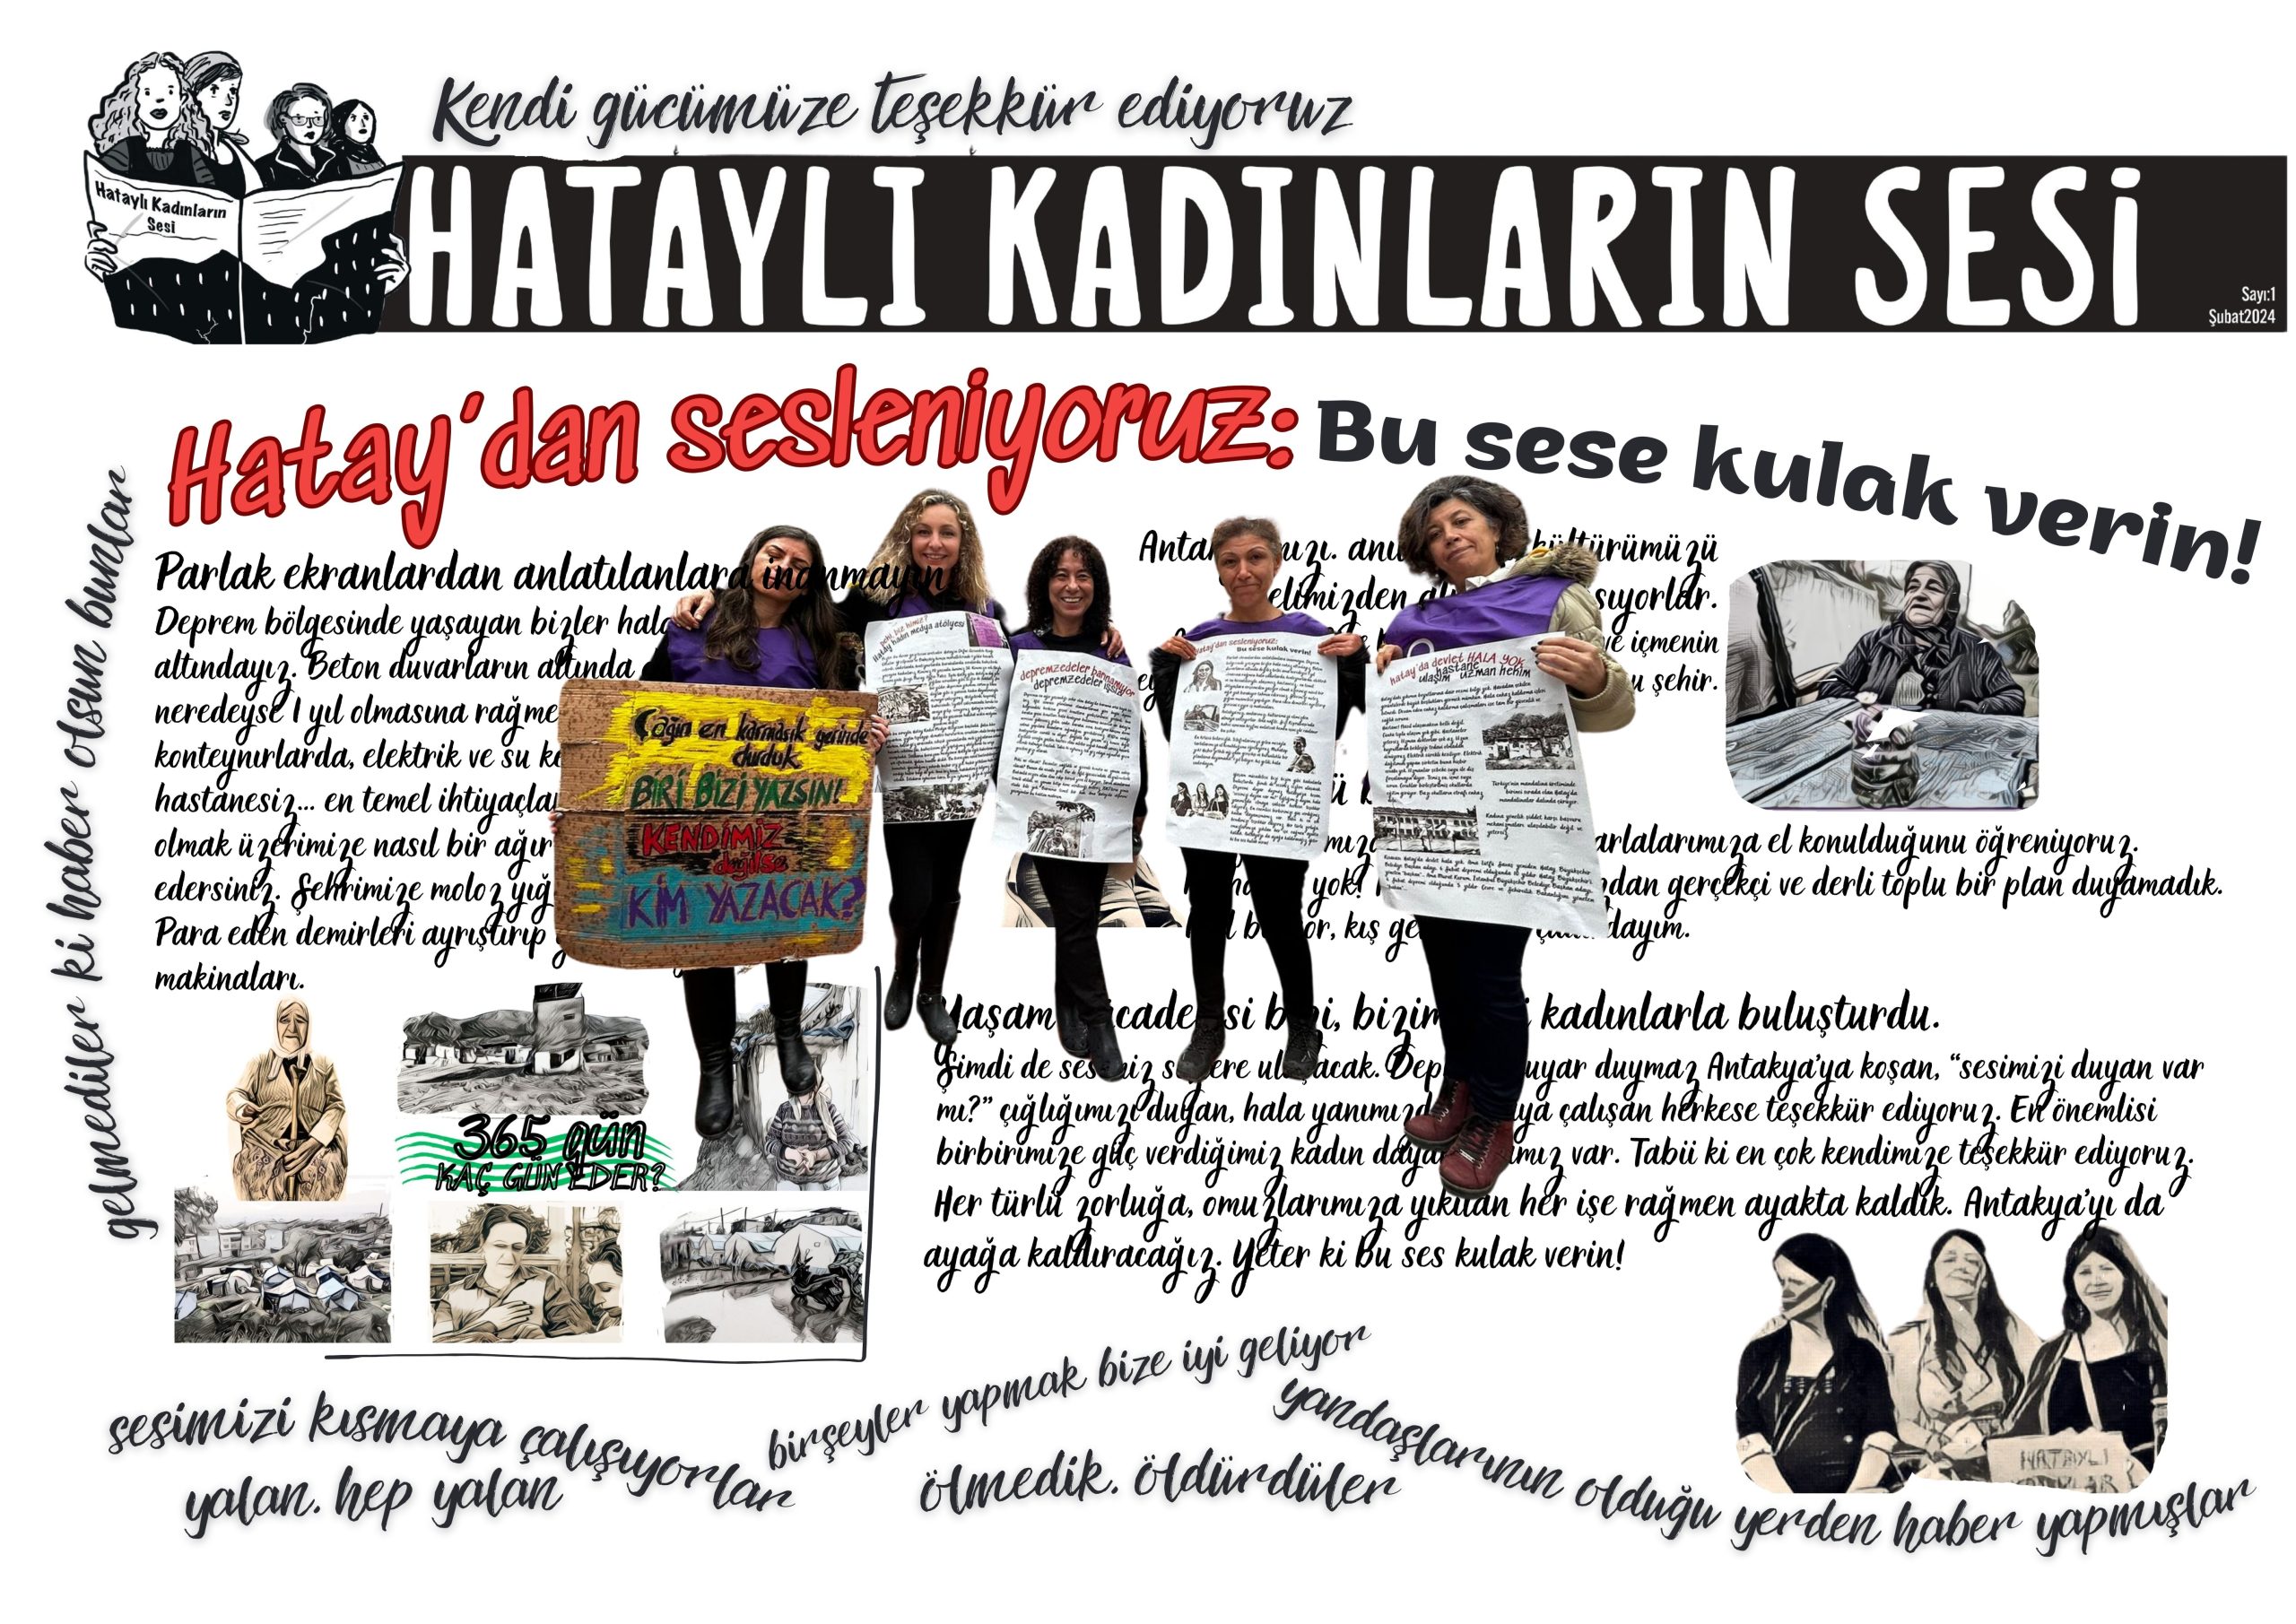 Hataylı Kadınların Sesi, Konuşan Gazete Sokaktaydı: İzmir’den Hatay’a Ses Olduk!